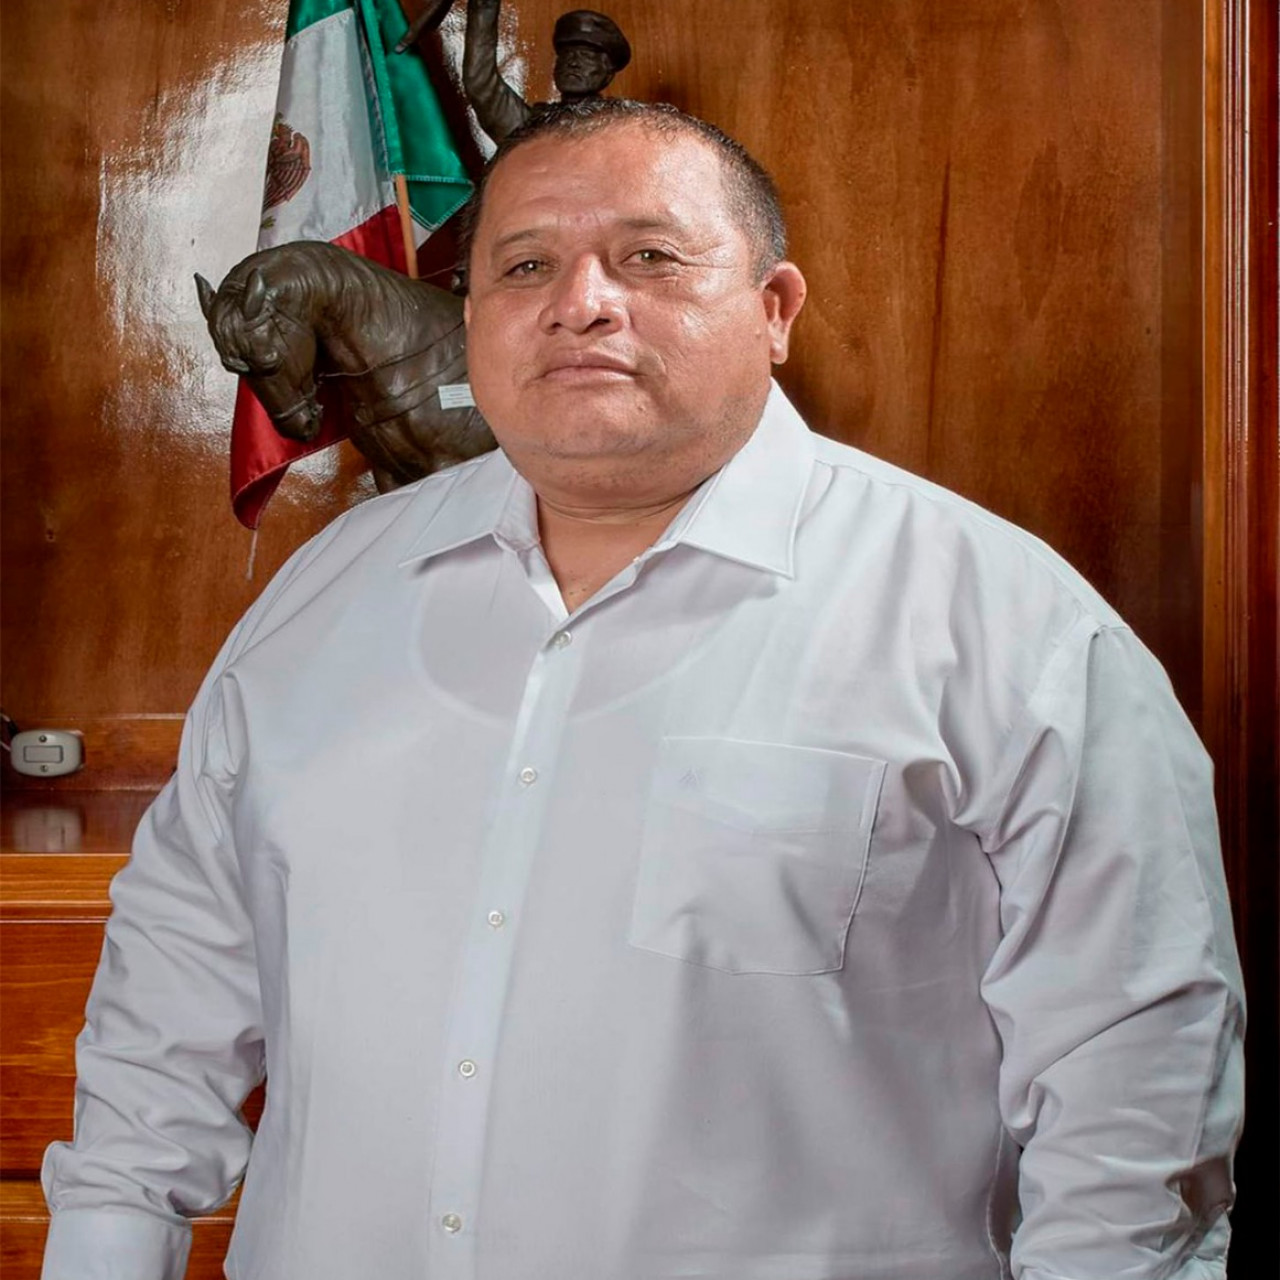 DAGOBERTO LUCERO HERNÁNDEZ